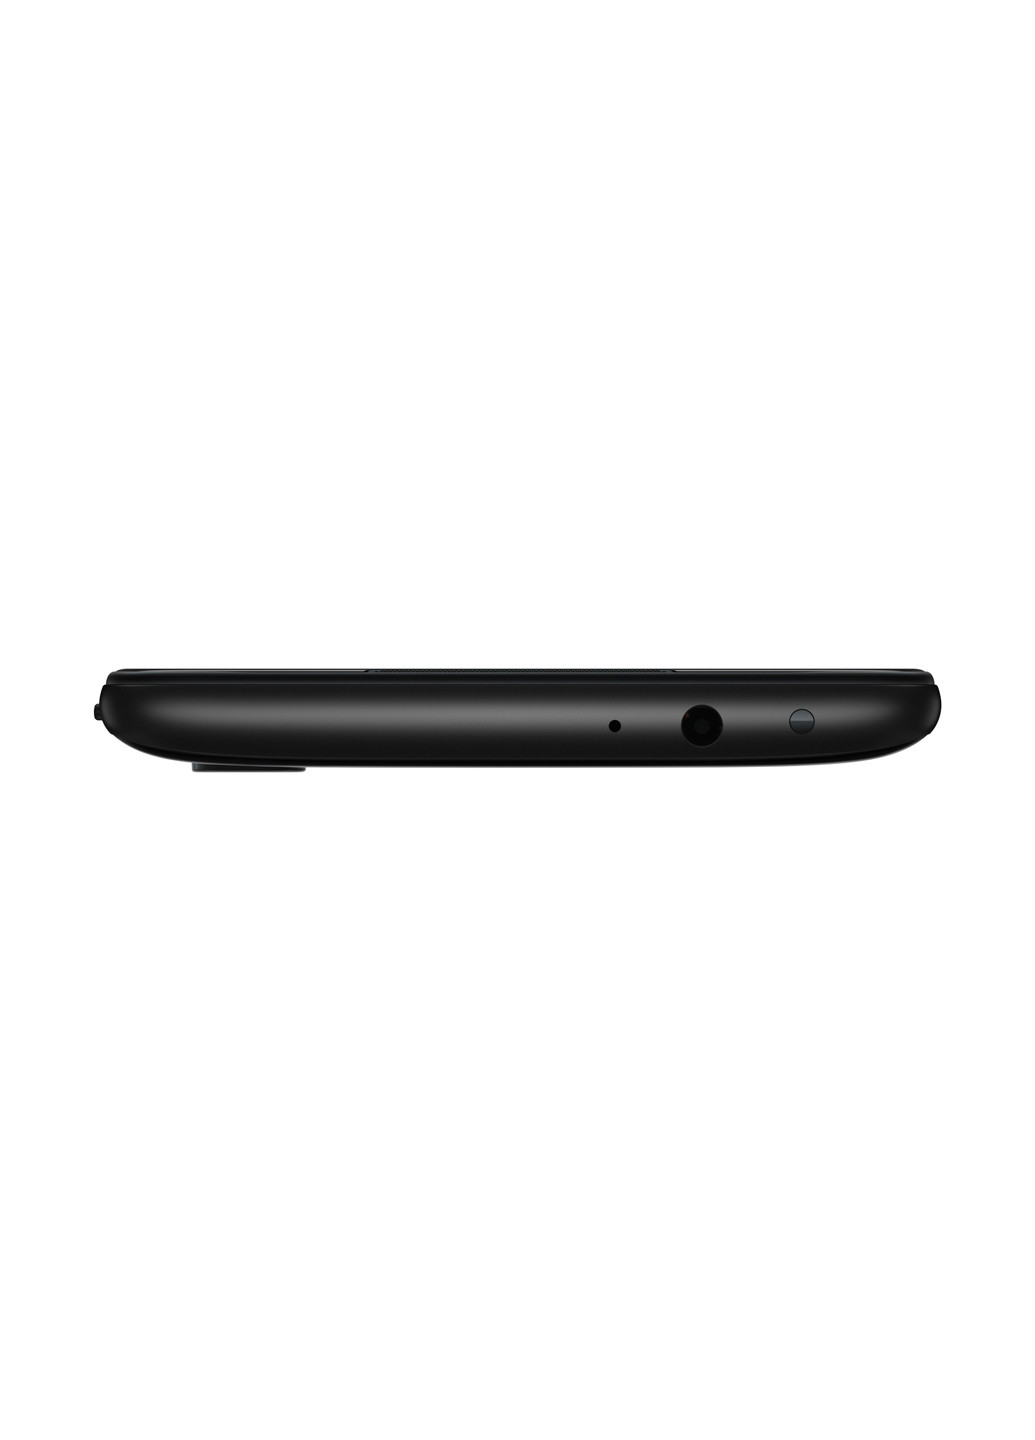 Смартфон Redmi 7 3 / 32GB Eclipse Black Xiaomi redmi 7 3/32gb eclipse black (130569704)